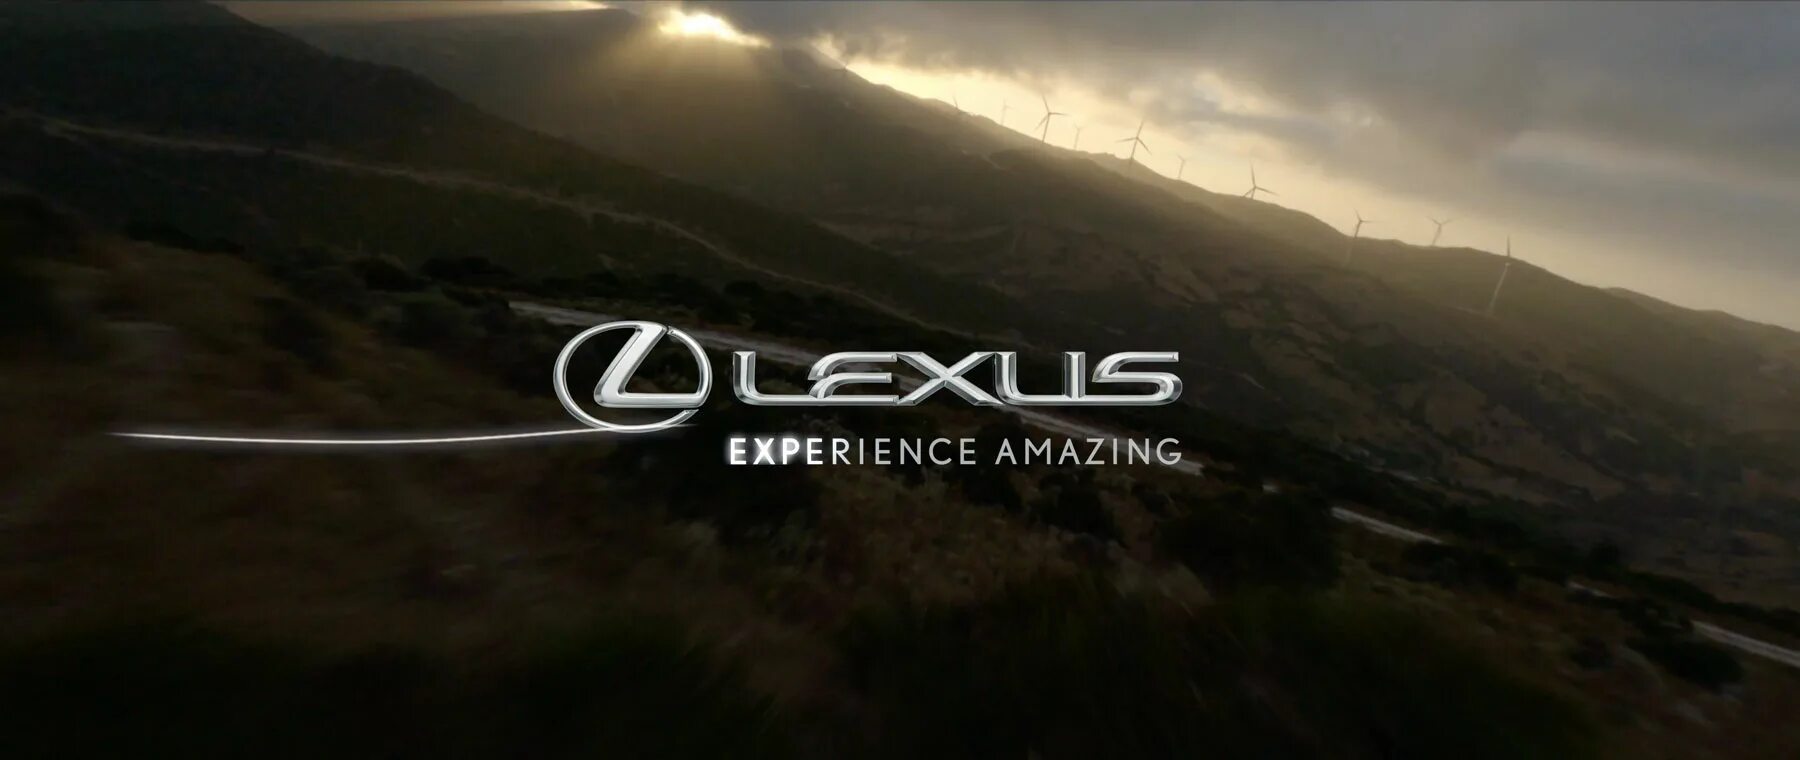 Experience amazing. Lexus experience amazing. Experience логотип. Картинка experience. Lexus experience amazing logo.